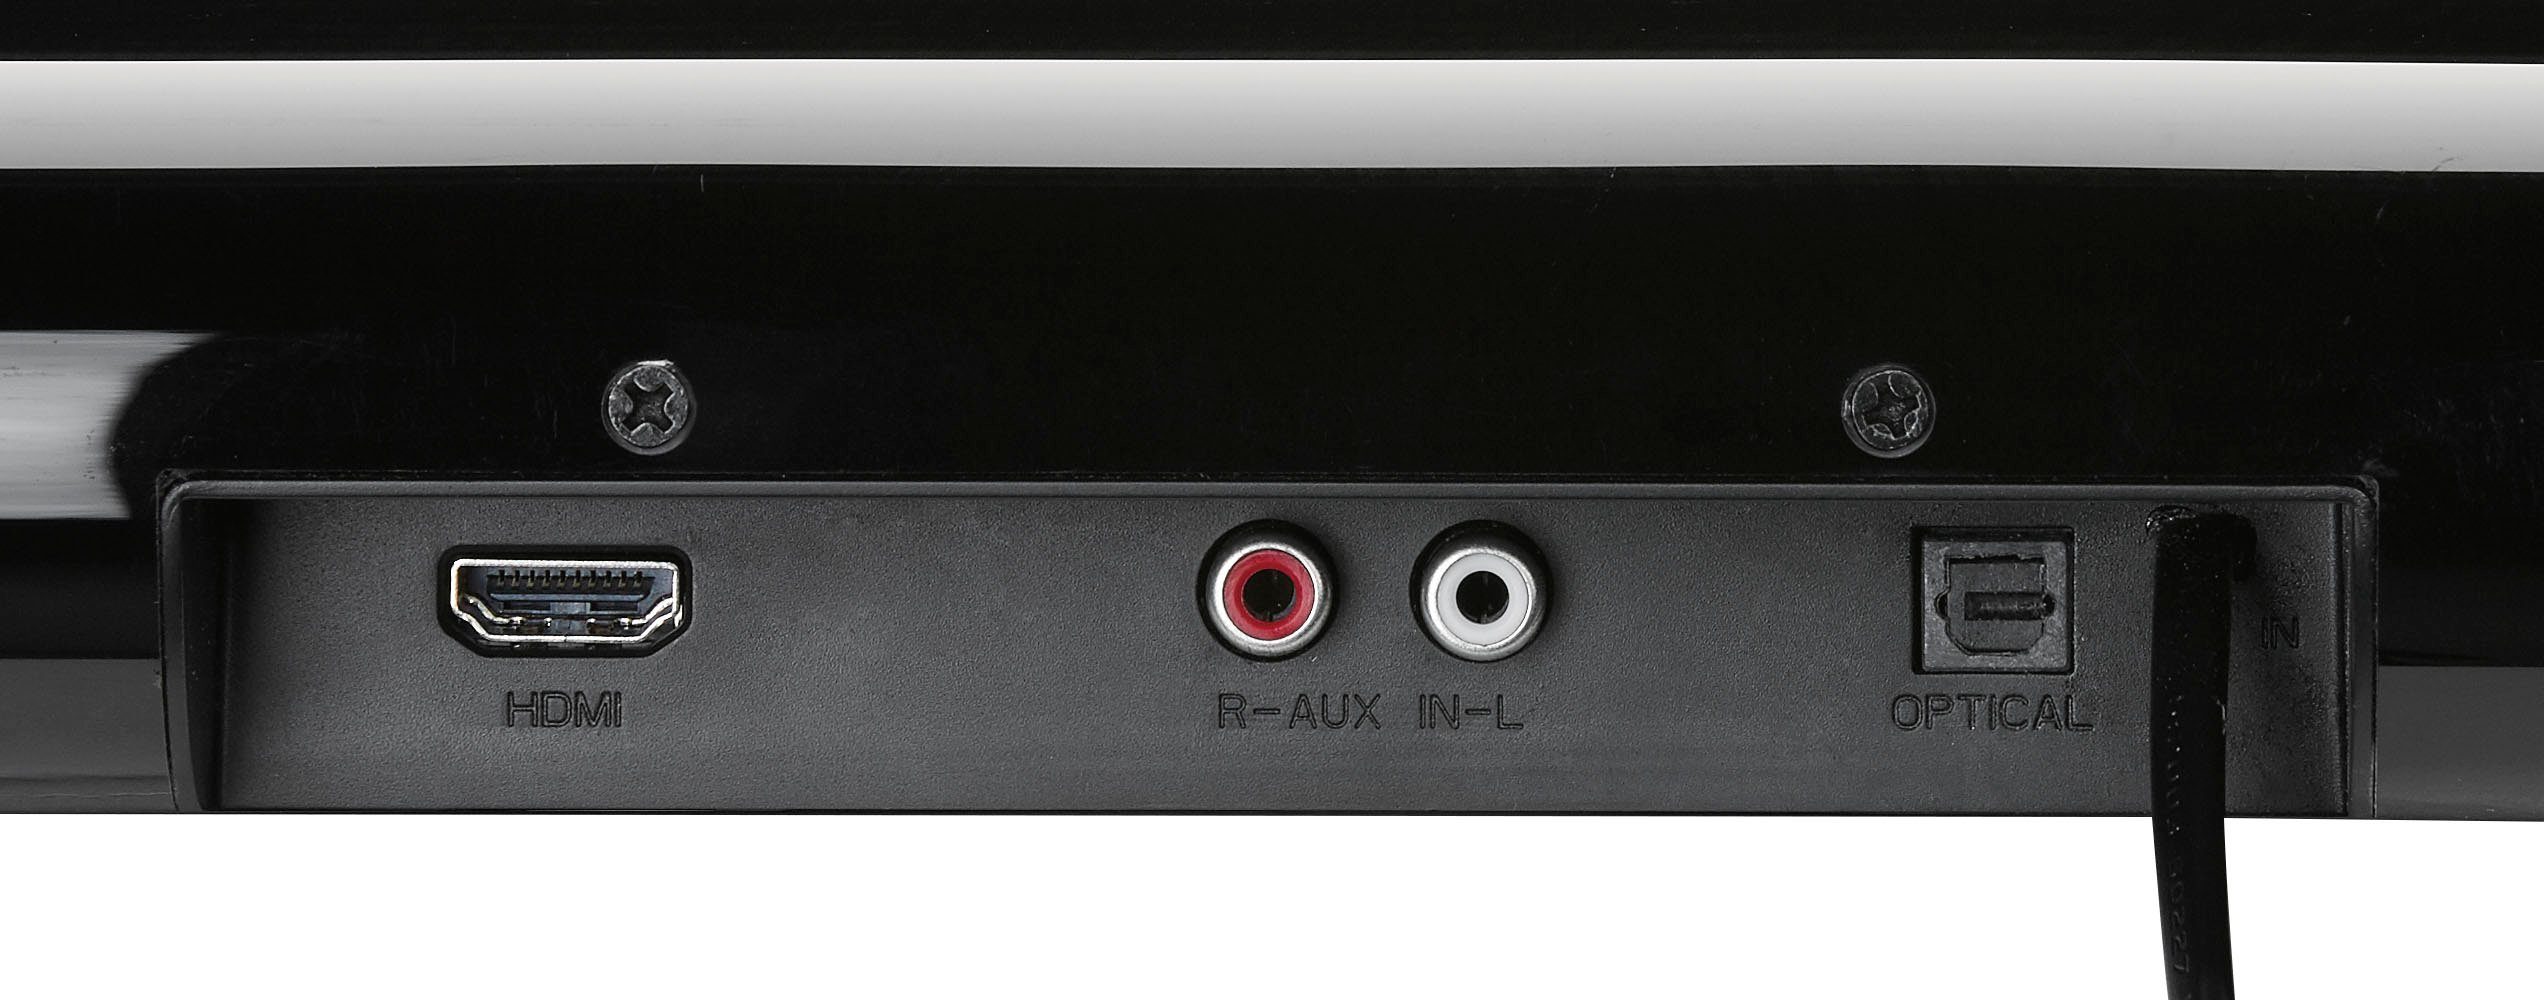 Soundbar DSB schwarz (Bluetooth, 950 W) 2.0 Grundig 40